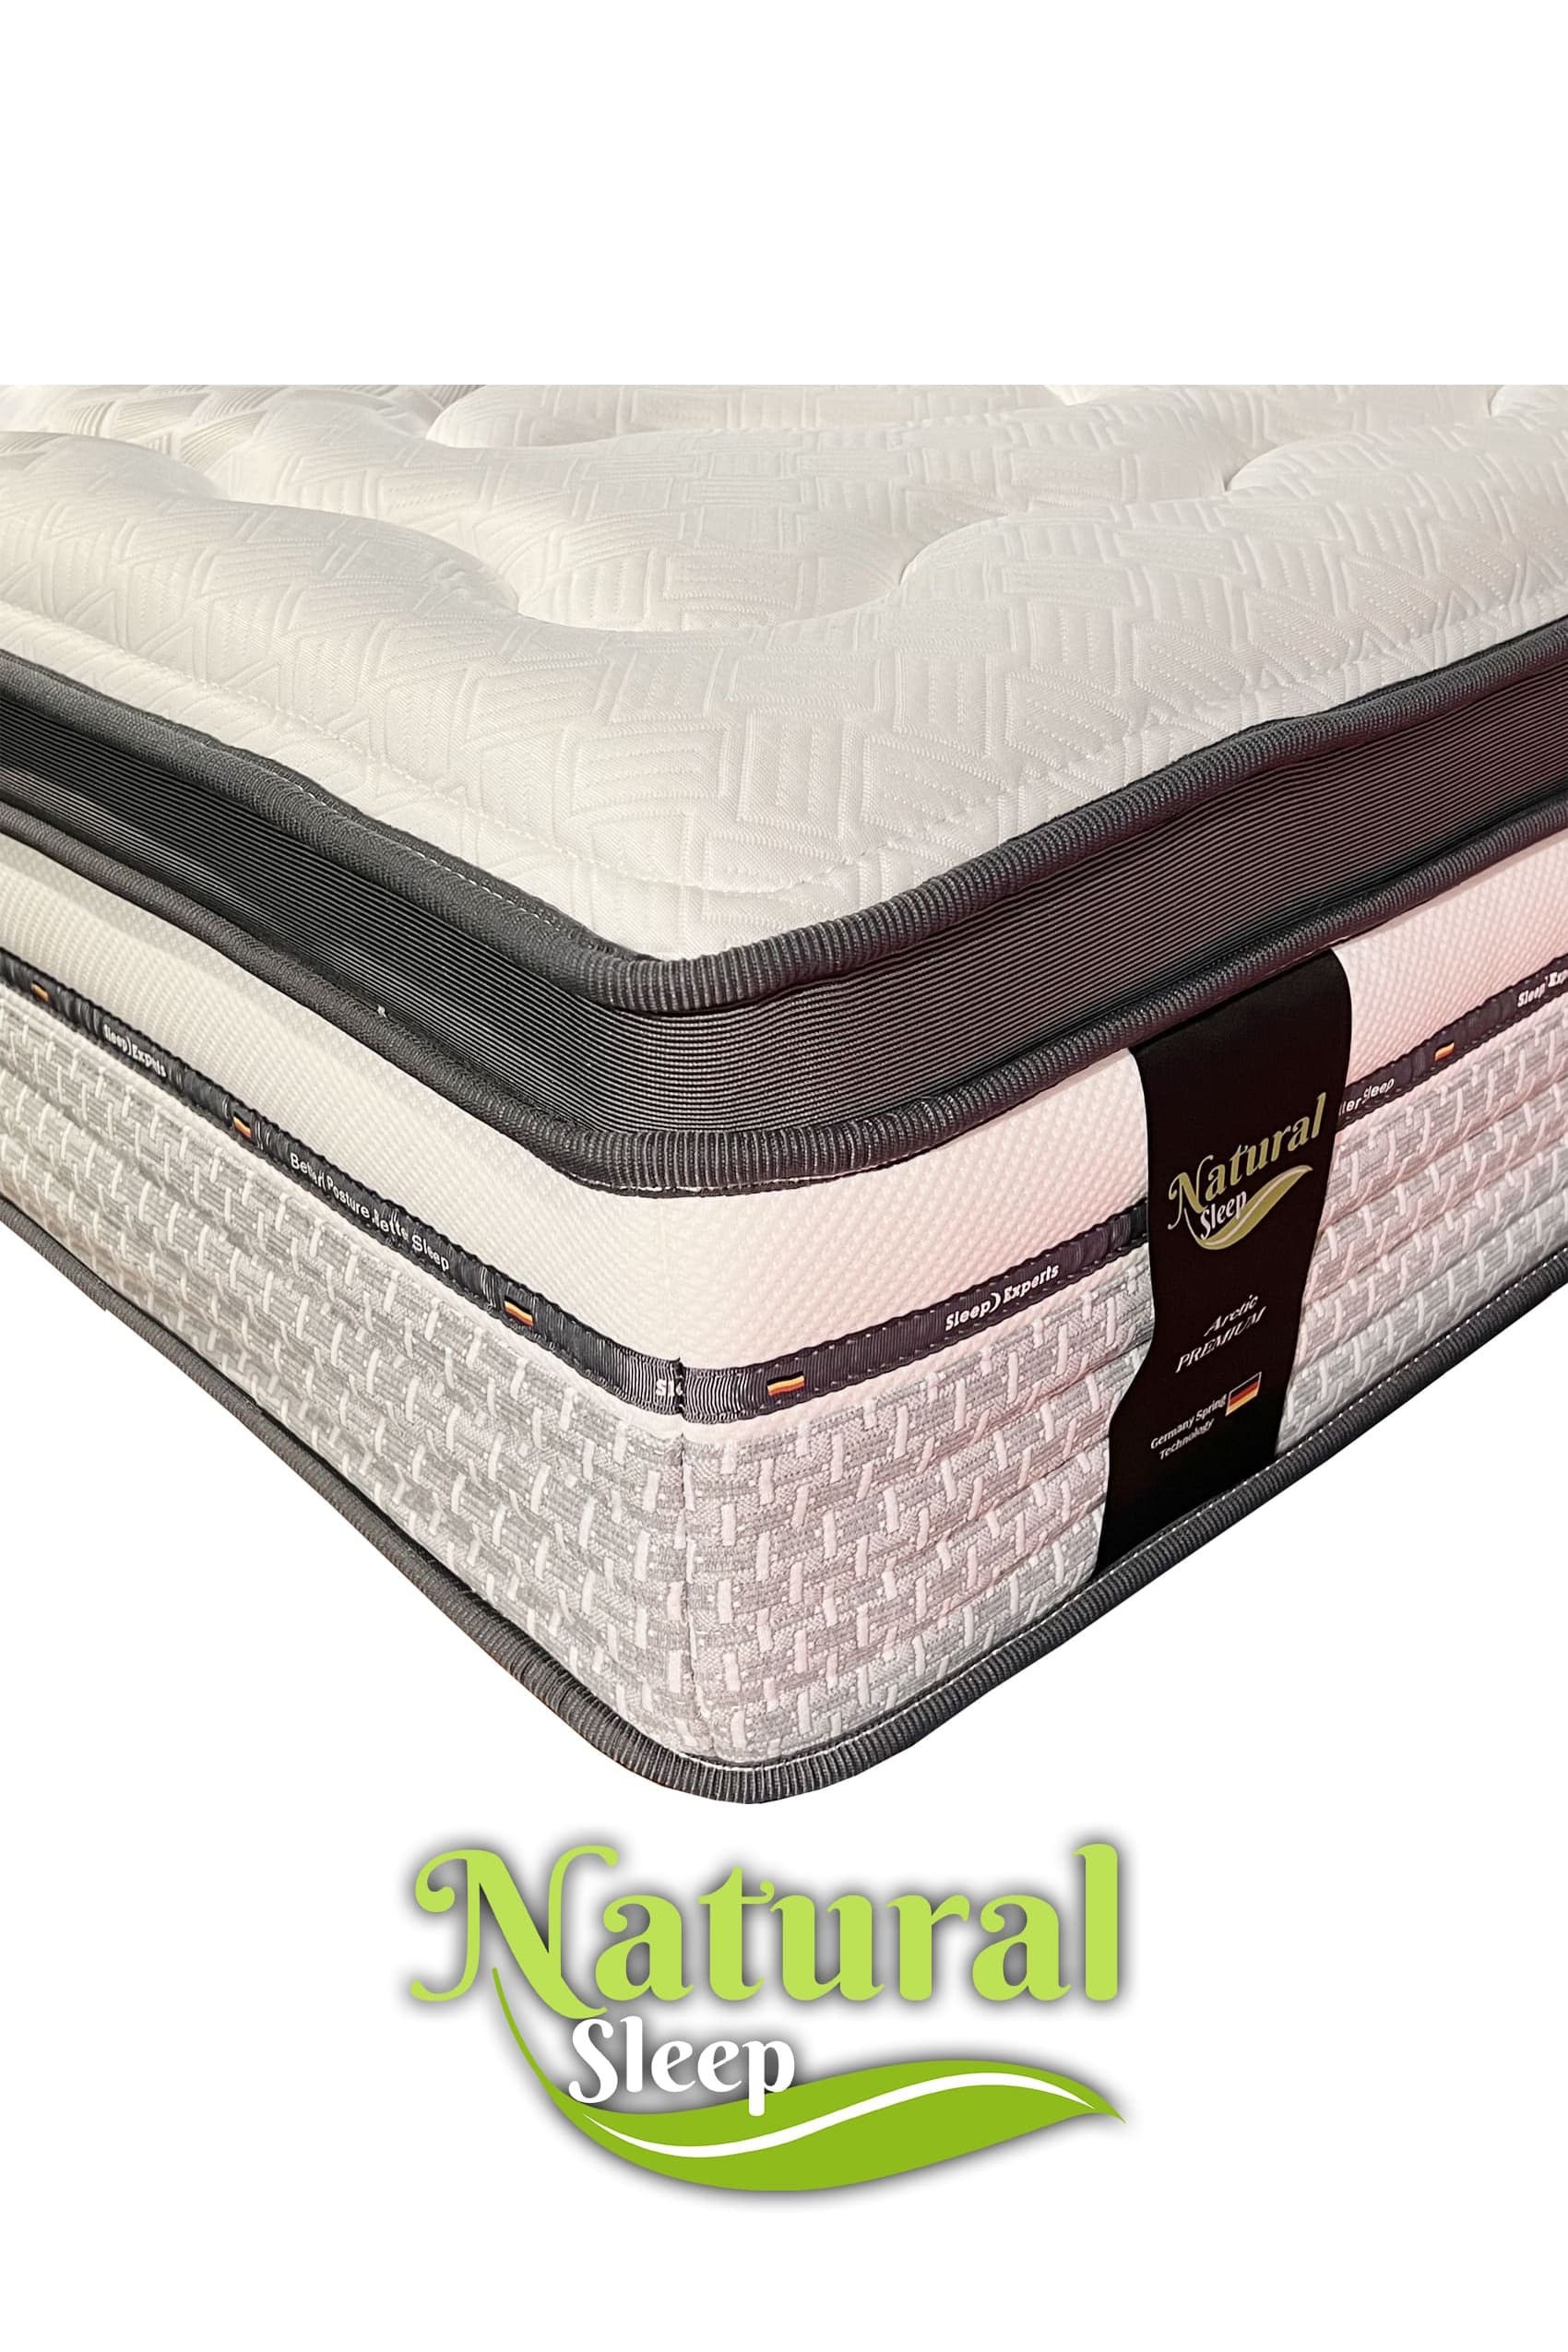 Natural Sleep Arctic Mattress